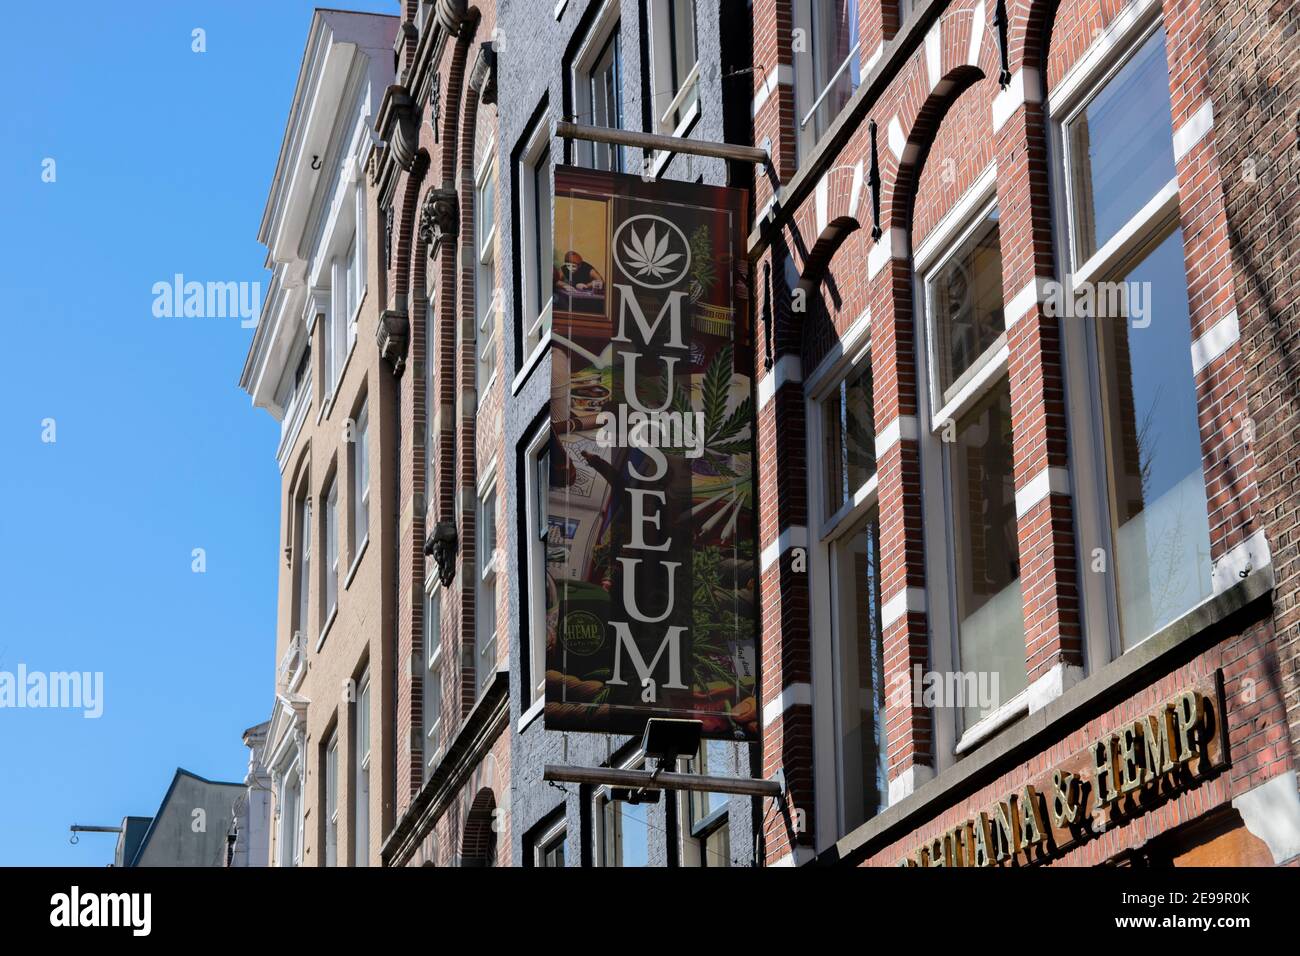 Hash Marihuana & Hemp Museum At Amsterdam The Netherlands 1-4-2019 Stock Photo